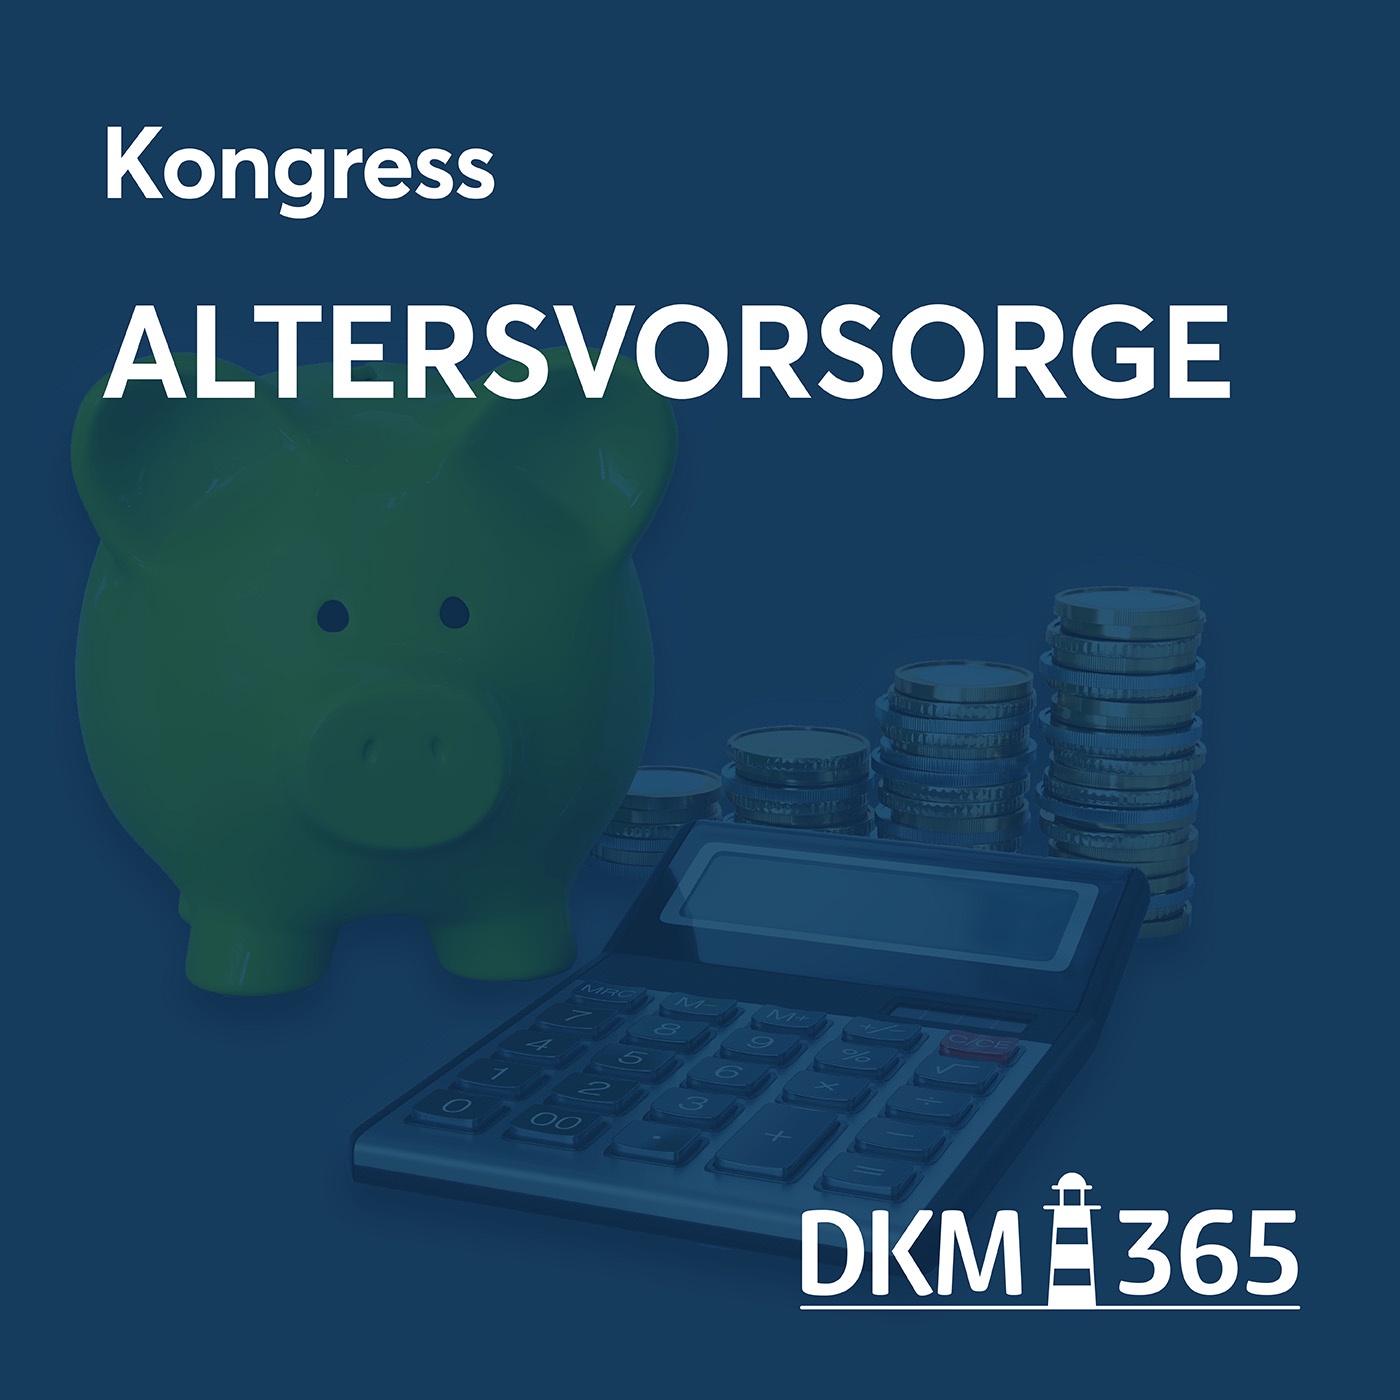 DKM OnStage - Kongress Altersvorsorge mit Andreas Kick, Christina Bay und Christian Haake